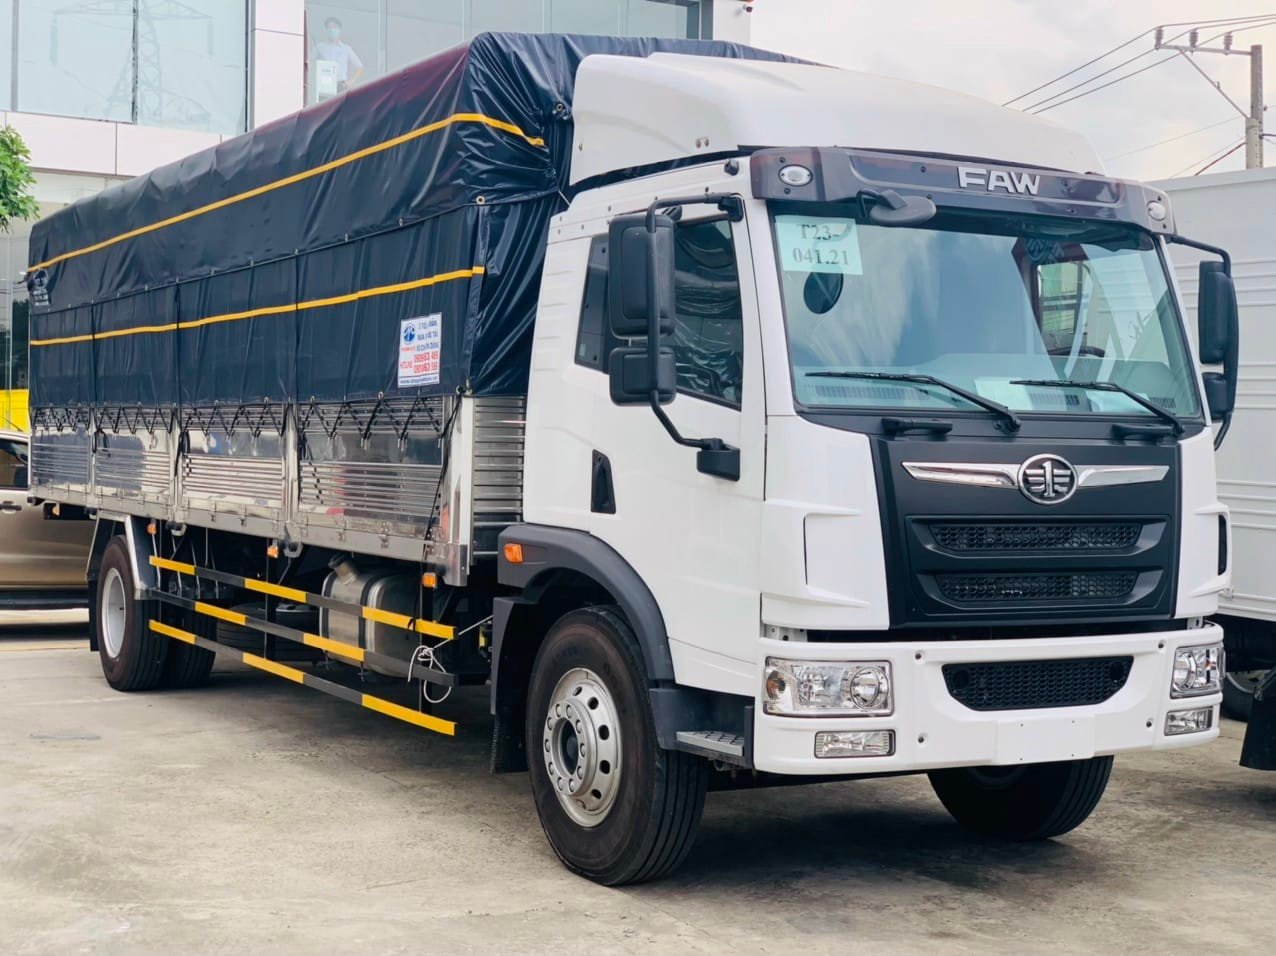 Xe tải FAW 8t3 thùng dài có bạt 8m2 giá rẻ hàng mới năm 2021